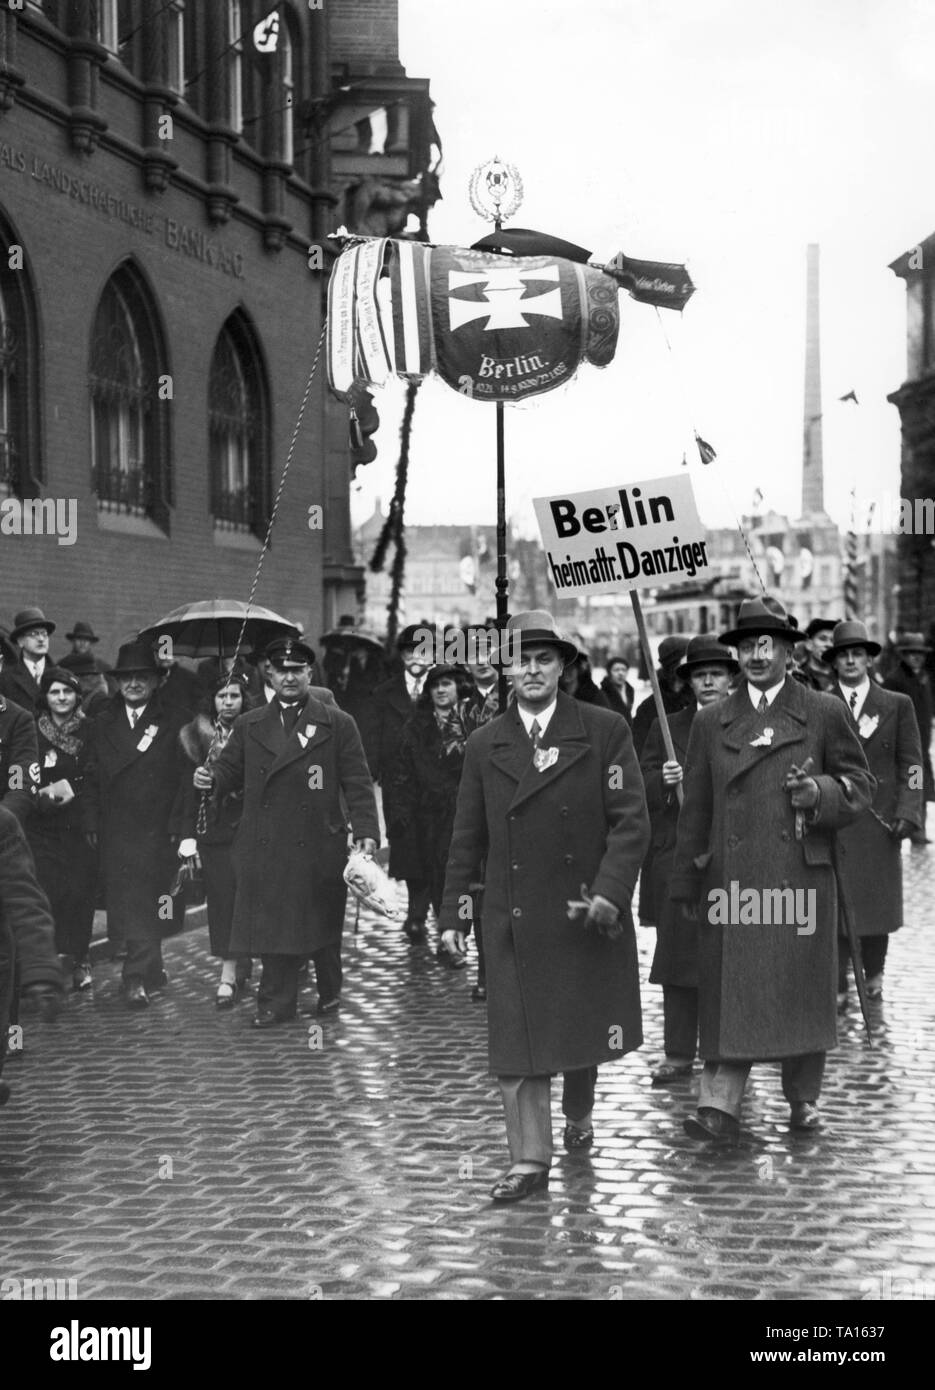 Eine Gruppe von Berliner Bürger in Betracht kommenden März durch Danzig anlässlich der Wahlen zum volkstag. Ein Mann trägt ein Schild mit der Aufschrift 'Berlin Home der Bürger von Danzig". Stockfoto